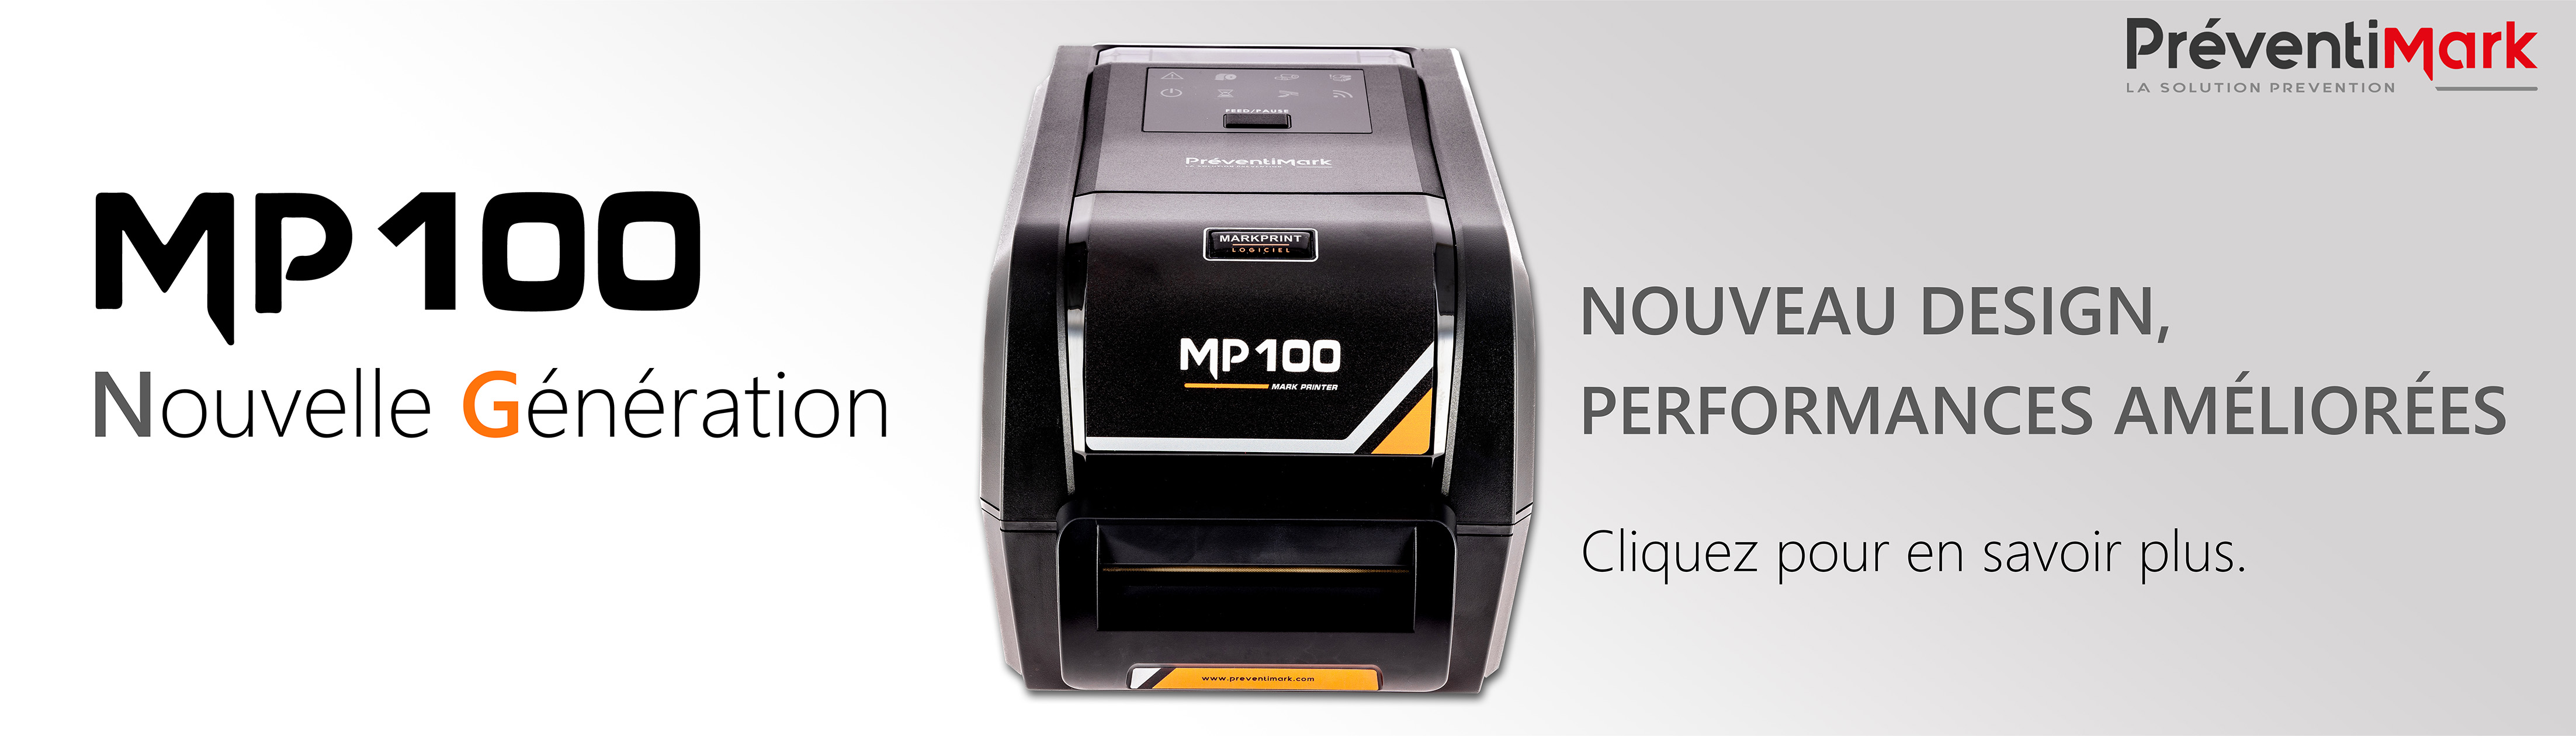 Imprimante MP100 nouvelle génération